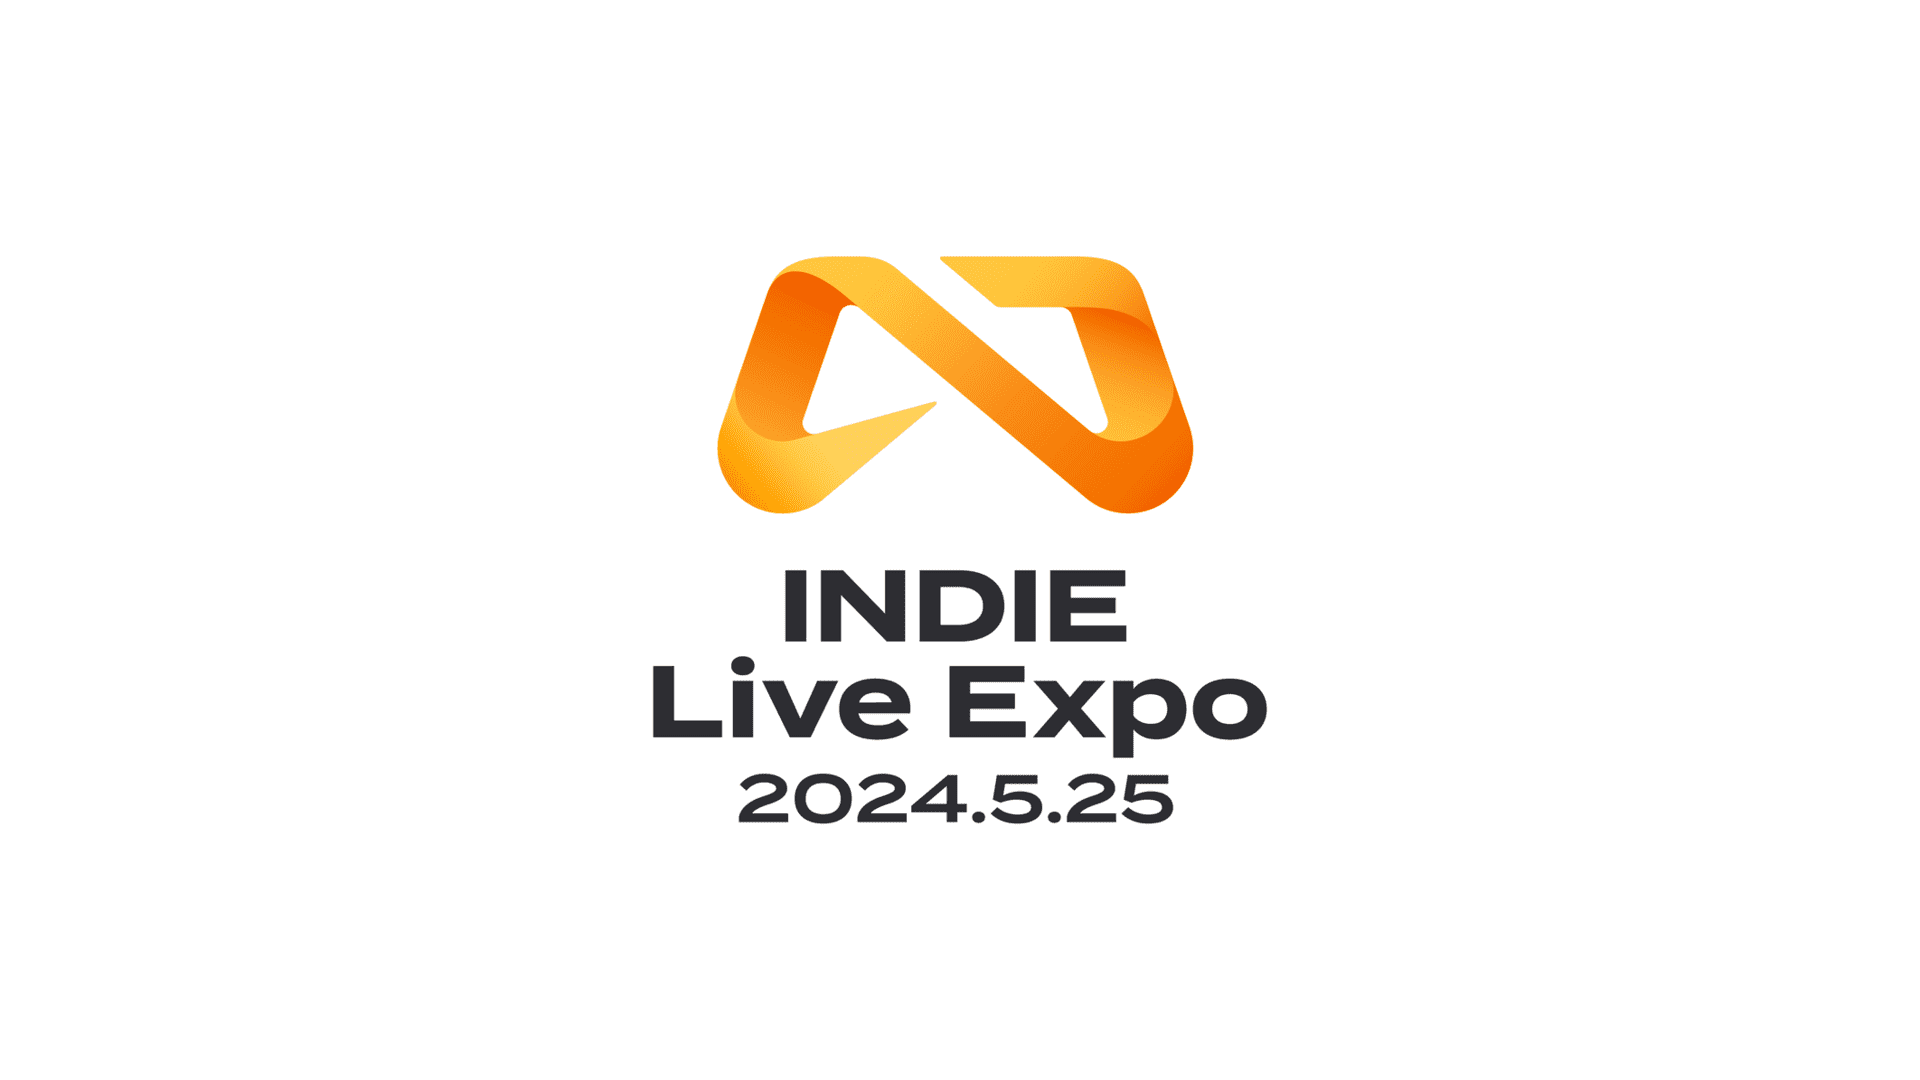 「INDIE Live Expo 2024.5.25」の番組内容発表。世界最大級のインディーゲーム紹介番組_001